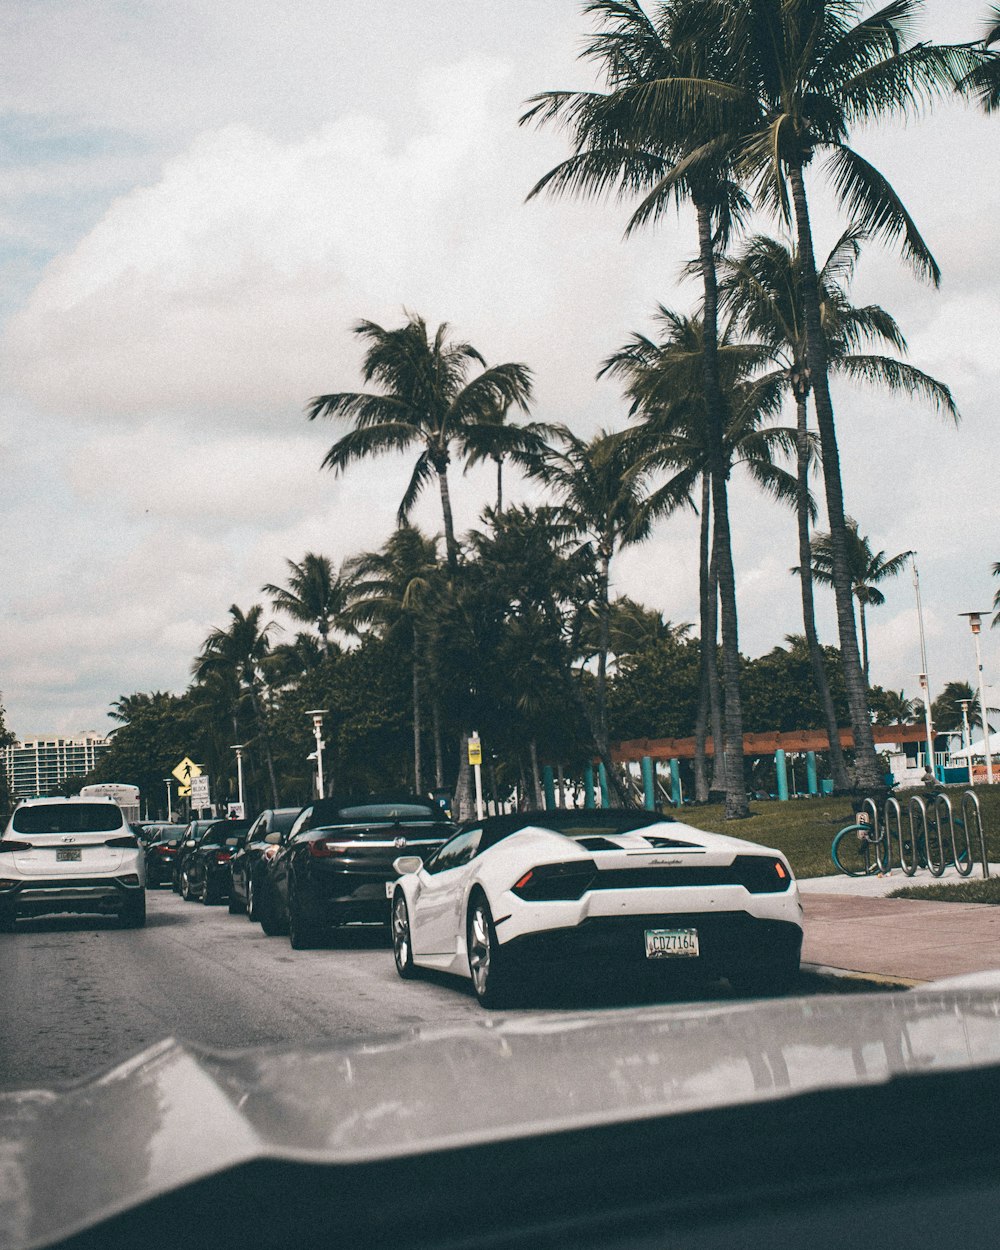 vehicles near coconut trees